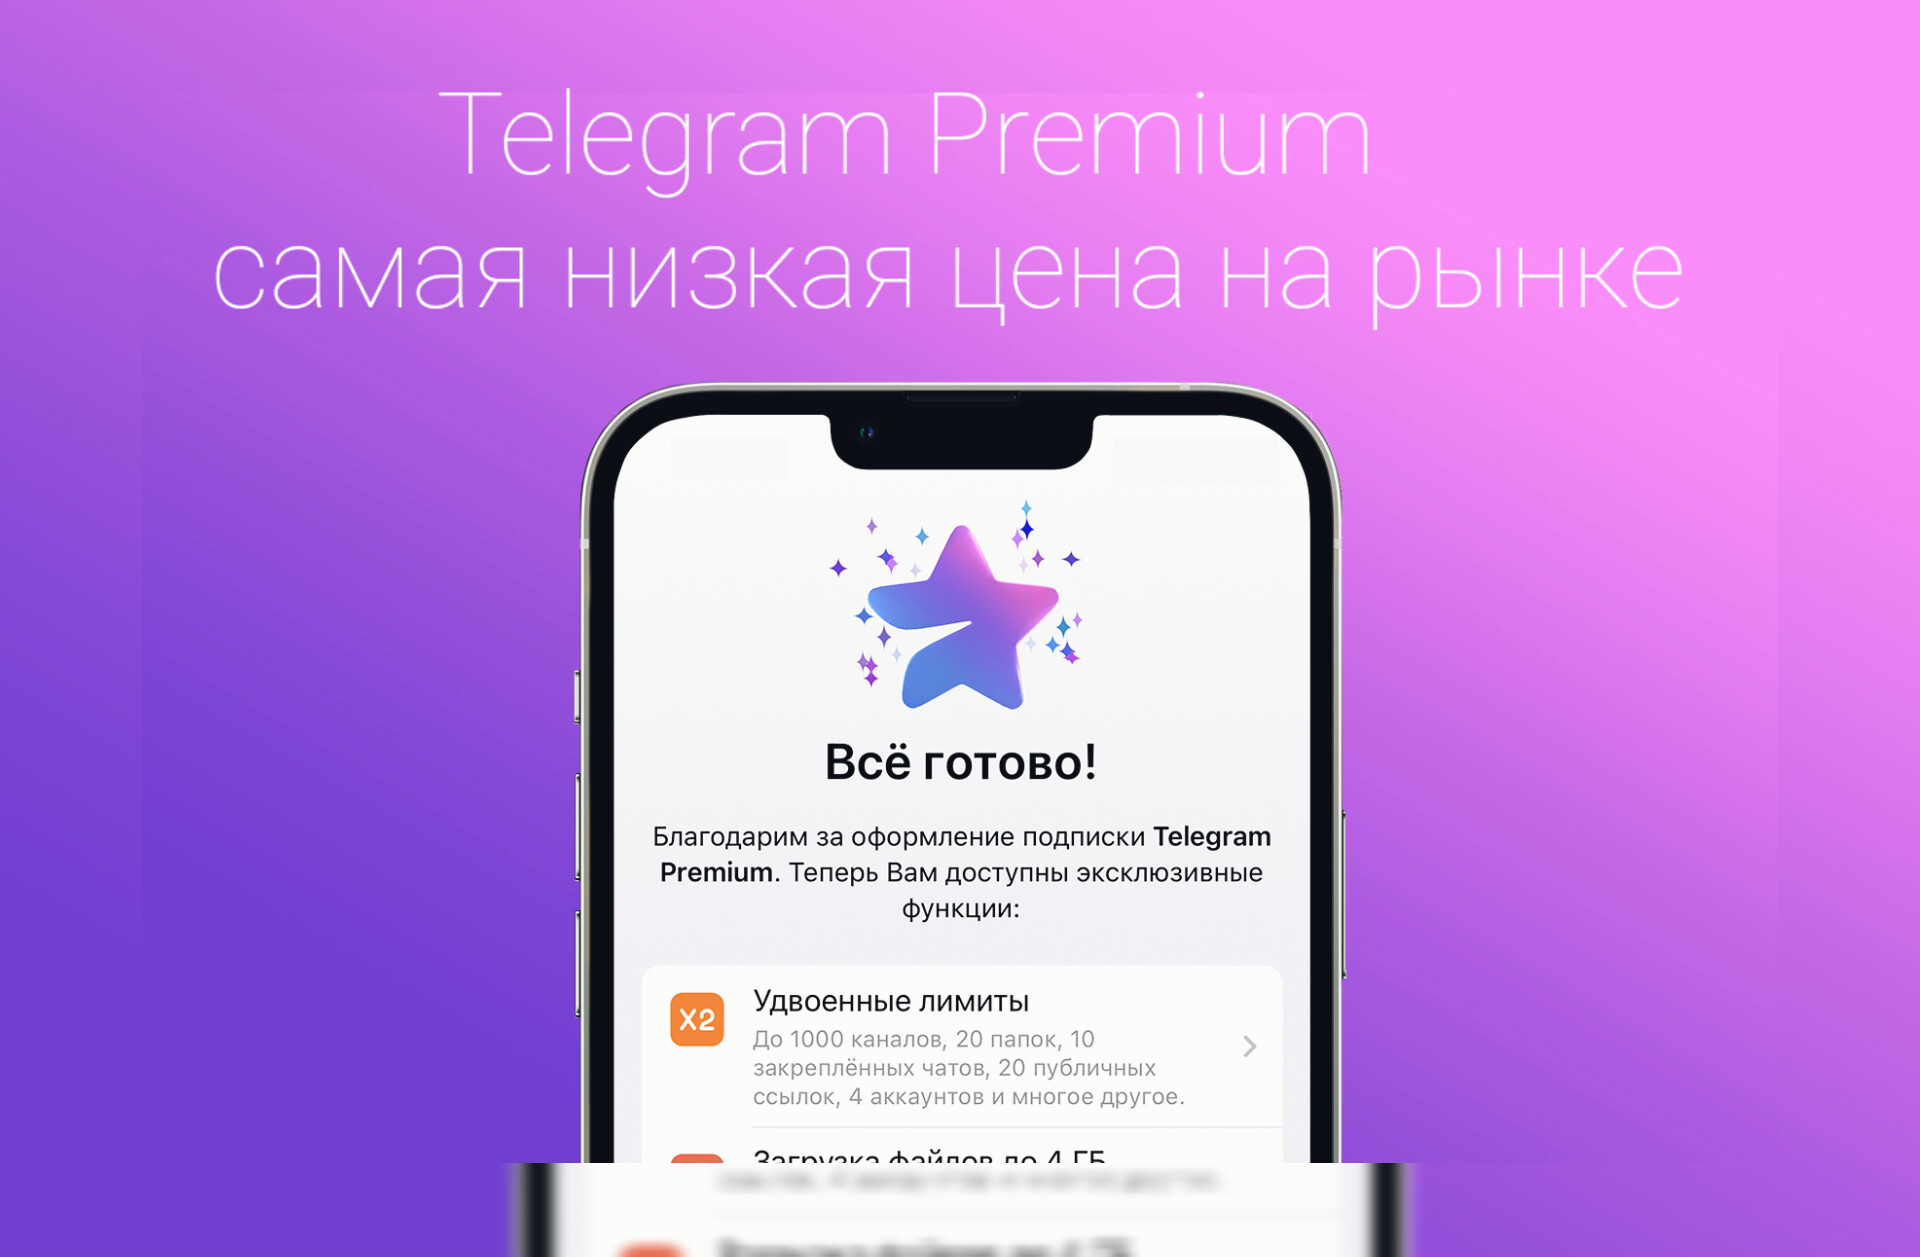 Актуальные каналы телеграмм. Телеграм премиум. Премиум подписка телеграм. Платная подписка в телеграм. Telegram Premium Premium.